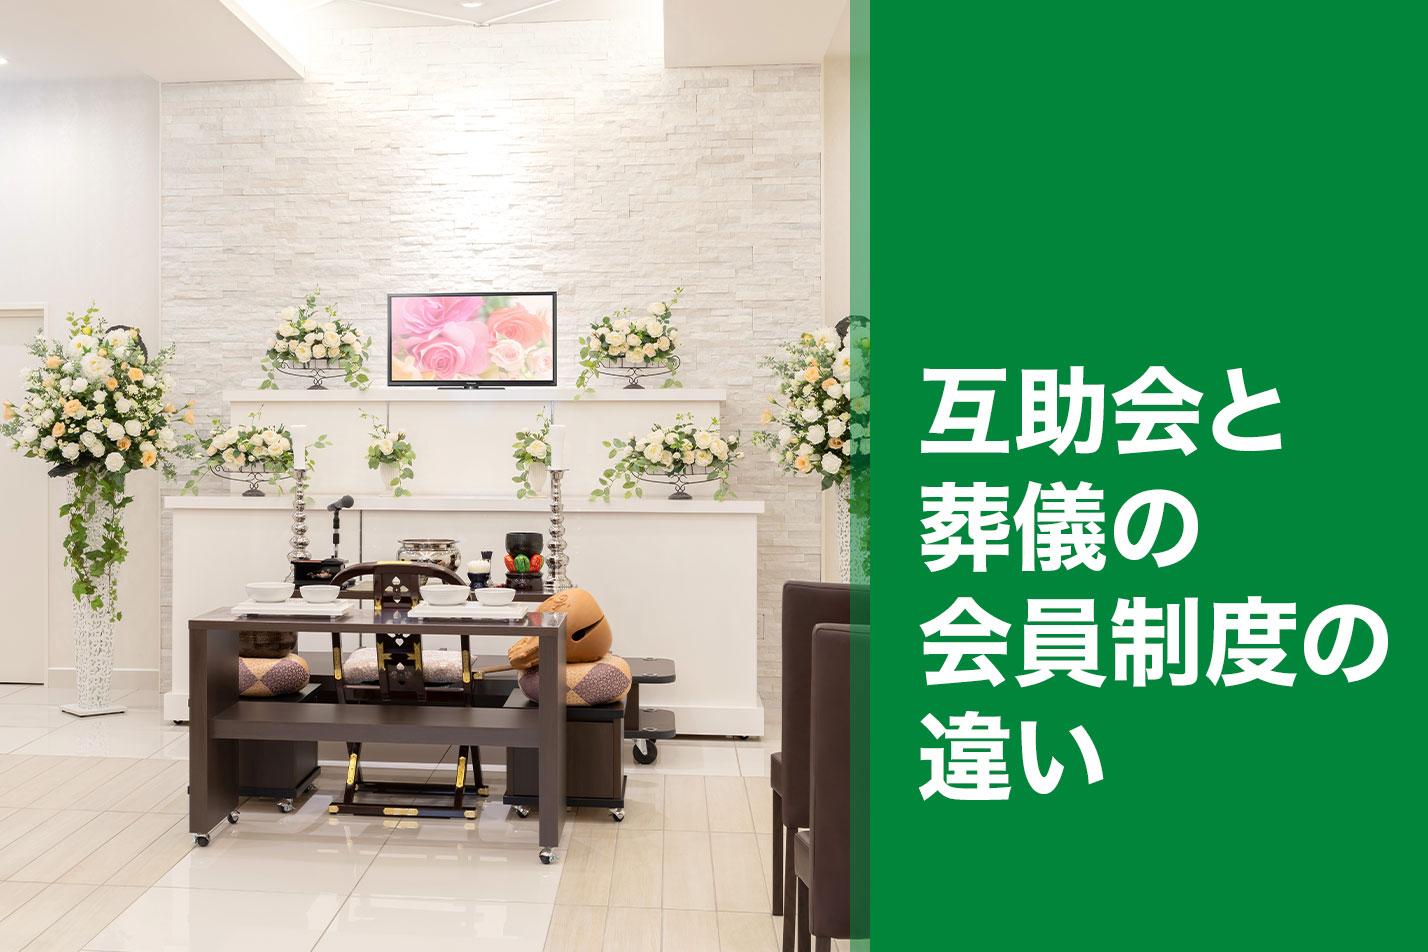  【西東京市】互助会と葬儀の会員制度の違いのイメージ画像